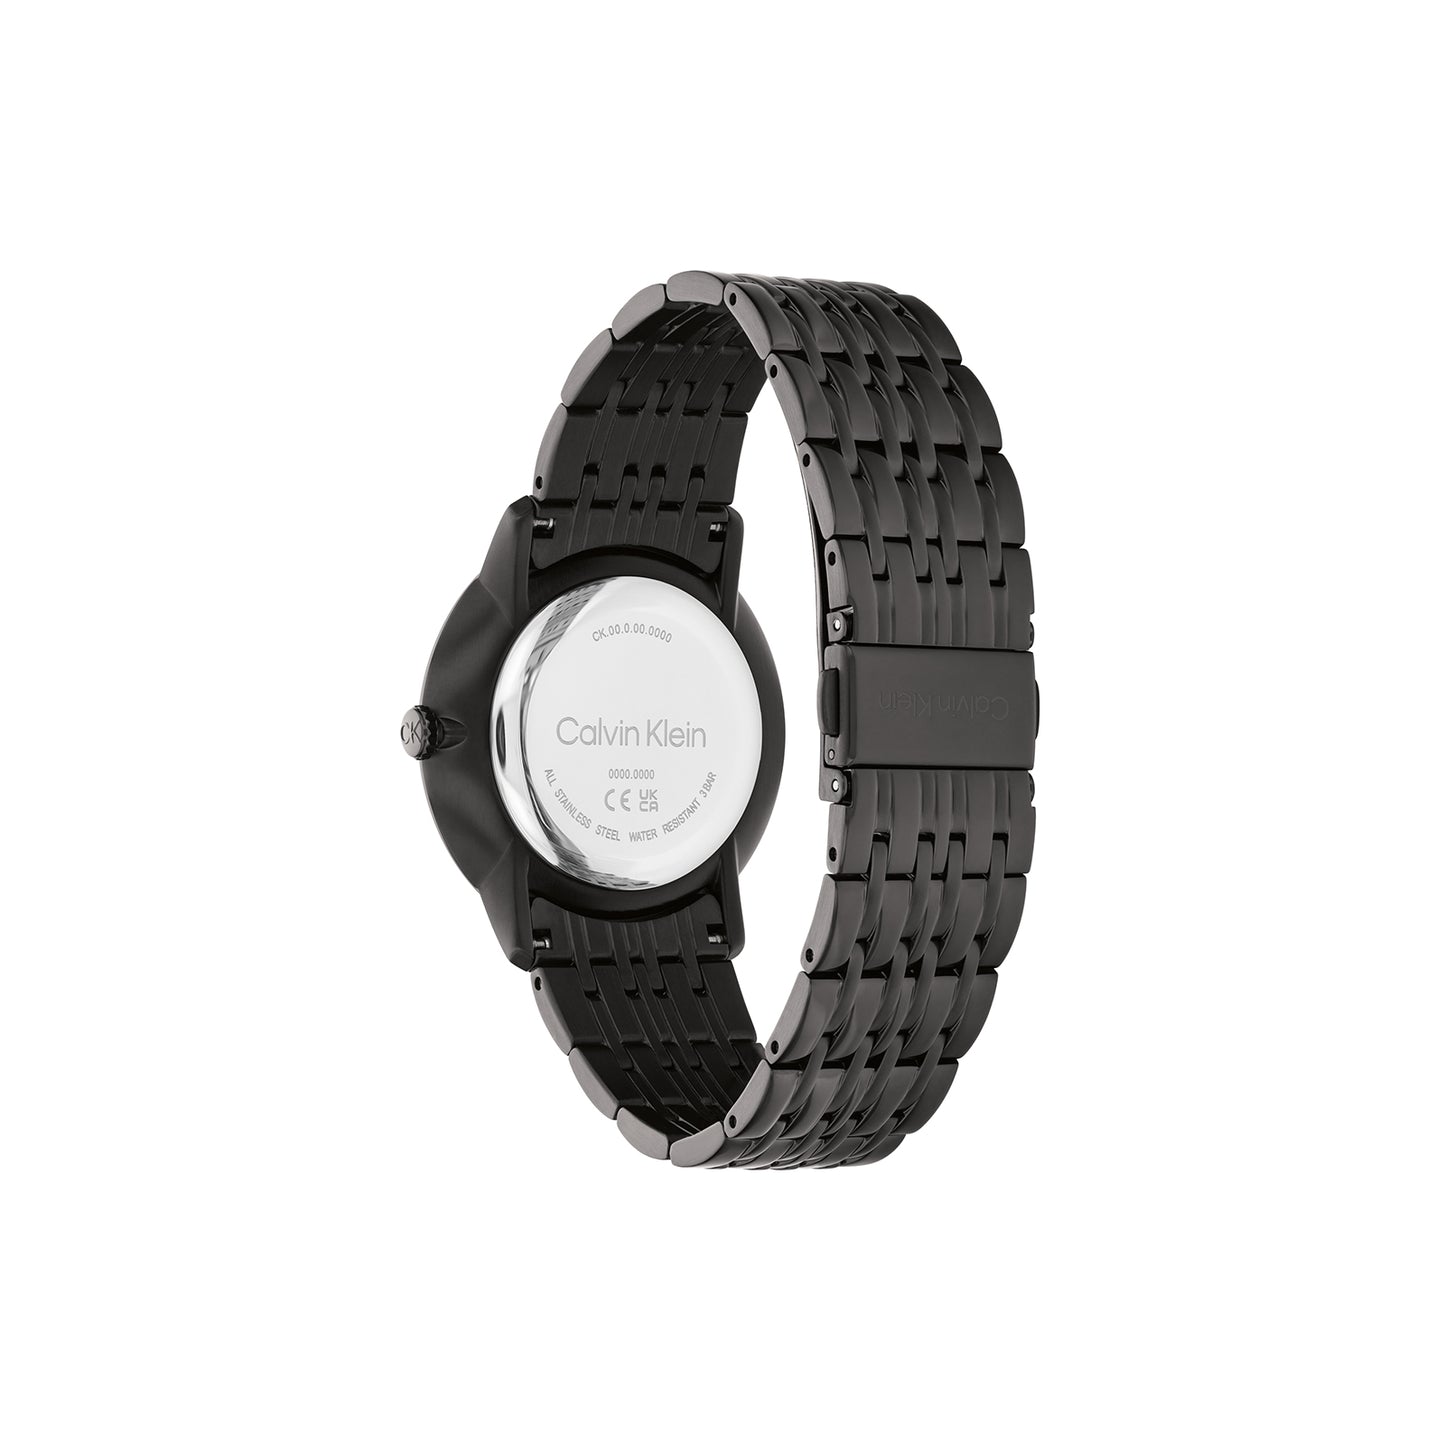 Calvin Klein 25300008 Unisex Ionic Black Plated Steel Watch